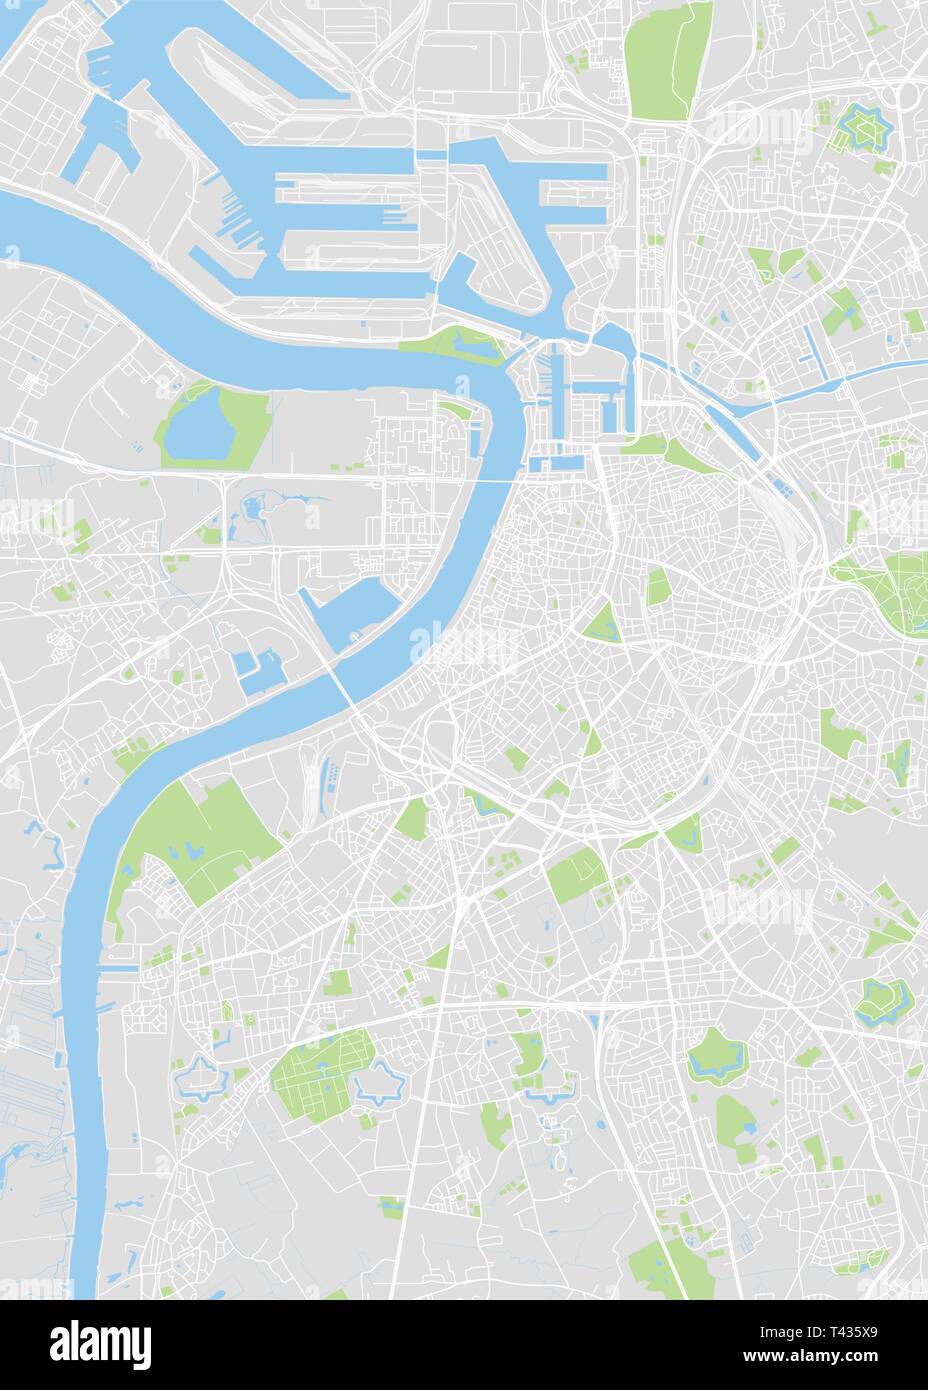 Antwerp city plan, detaillierte Vektorkarte detaillierten Plan der Stadt, Flüsse und Straßen Stock Vektor